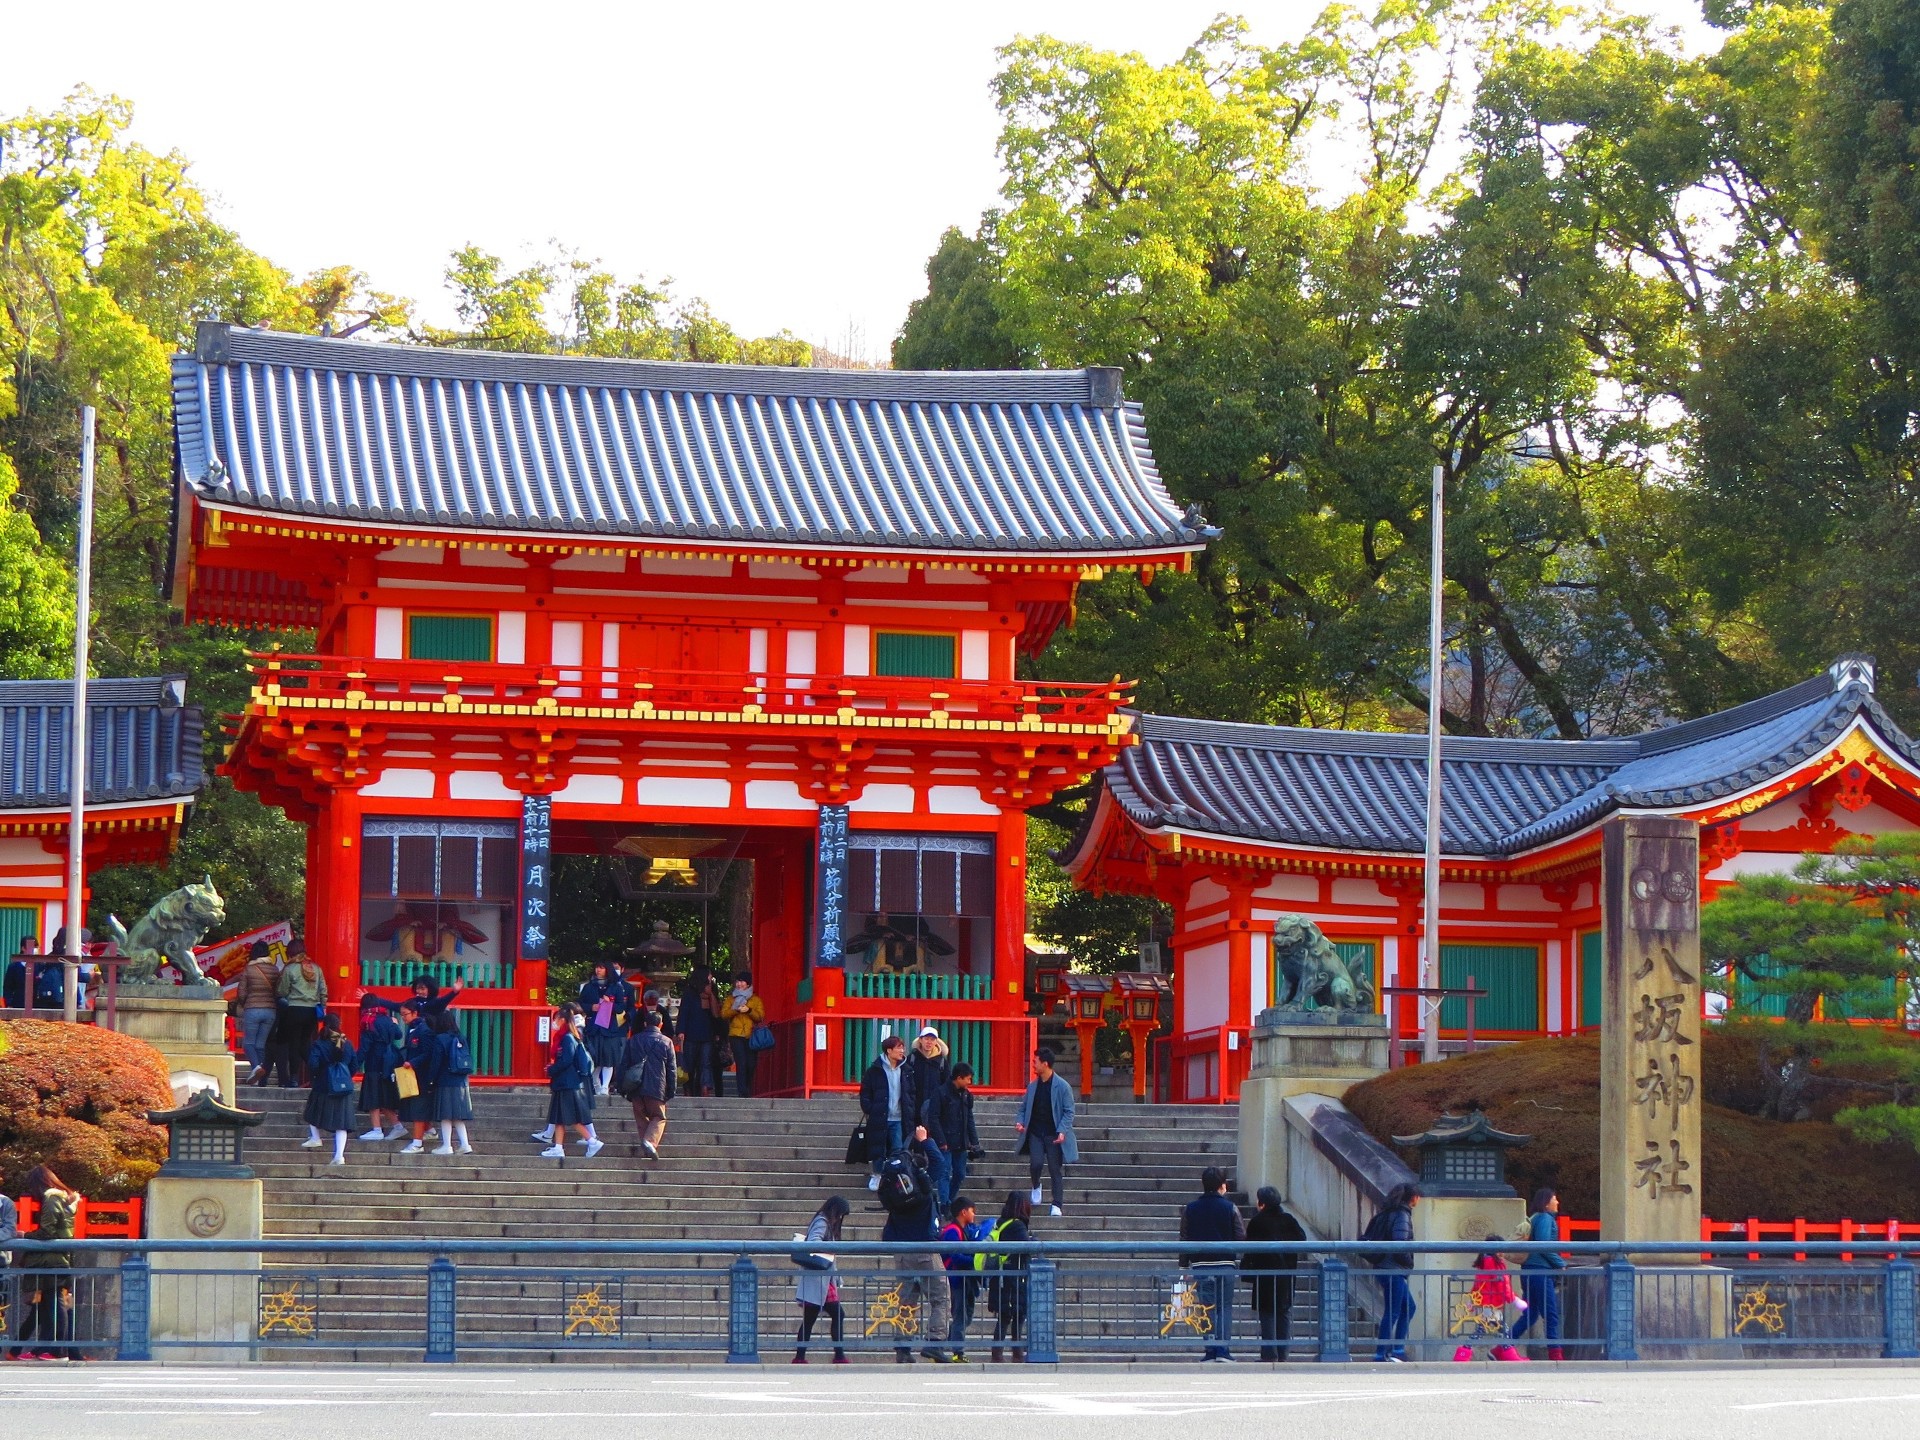 日本の風景 冬の京都 八坂神社 壁紙19x1440 壁紙館